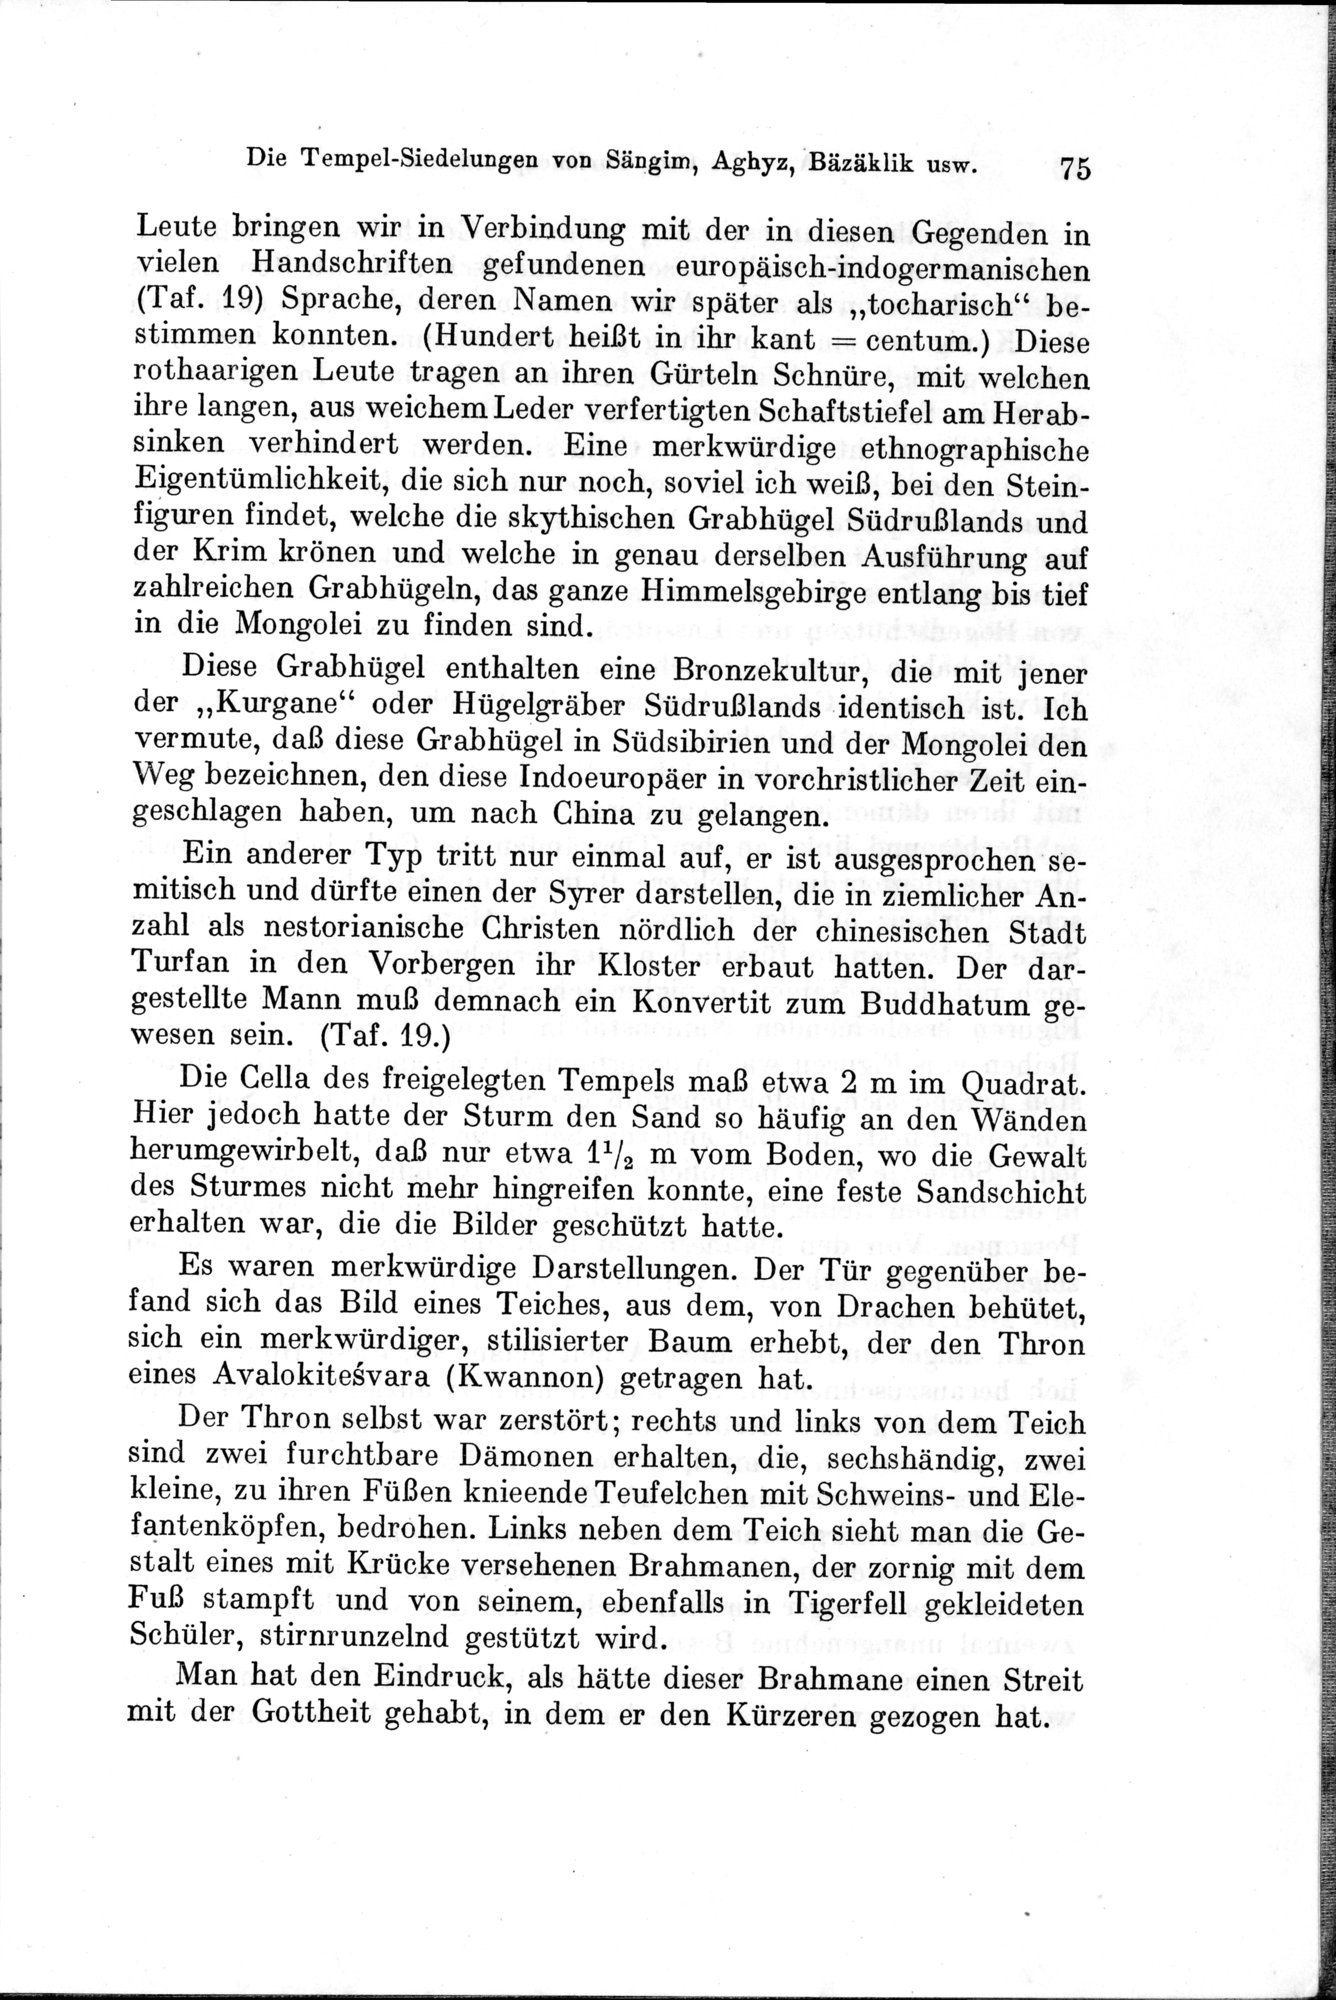 Auf Hellas Spuren in Ostturkistan : vol.1 / Page 113 (Grayscale High Resolution Image)